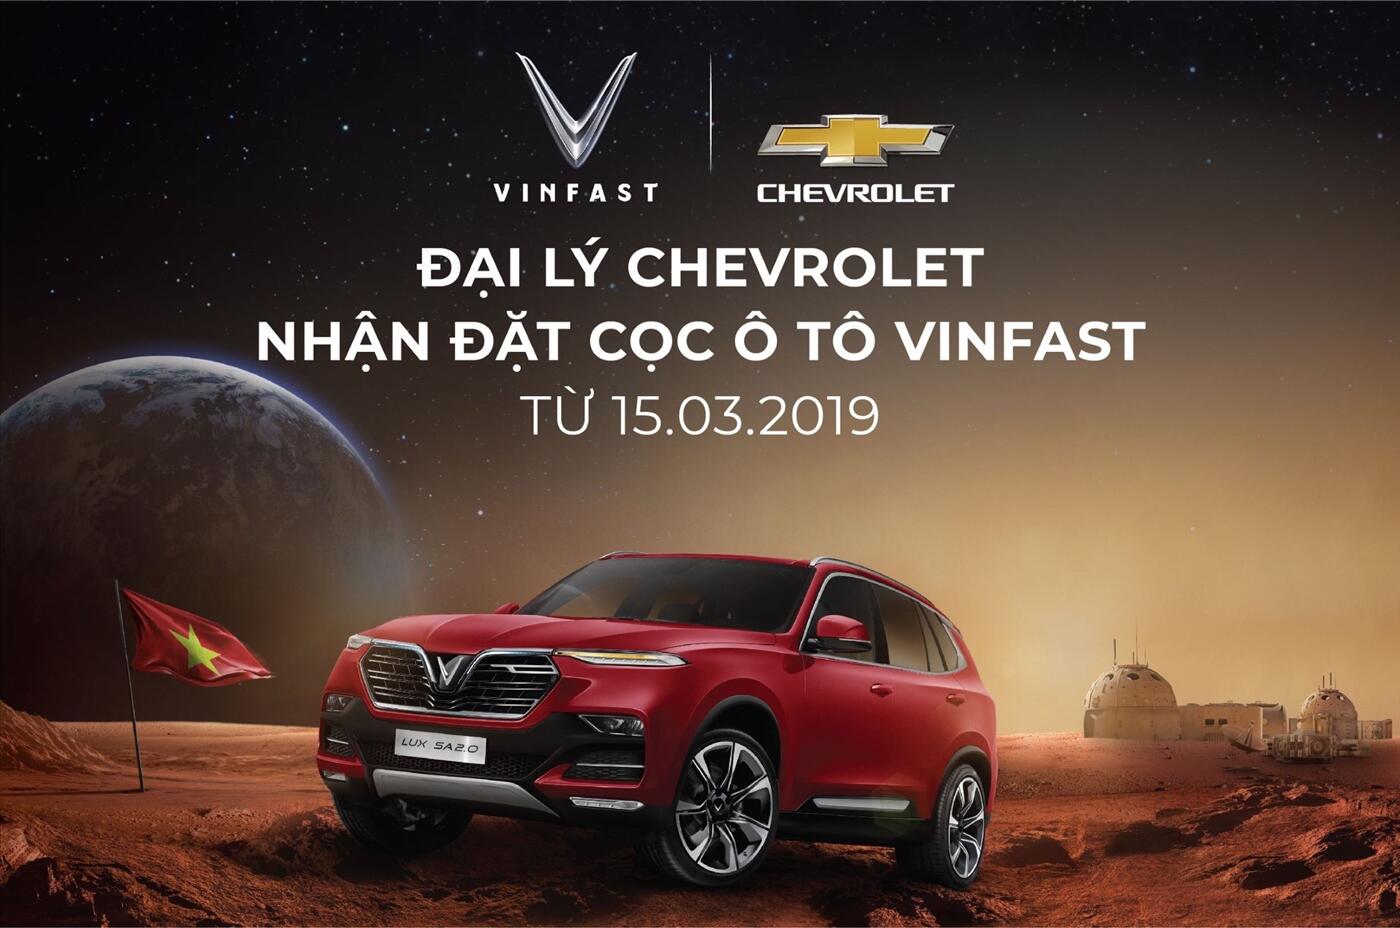 Các đại lý Chevrolet sẽ được nhận cọc xe VinFast từ ngày 15/03/2019